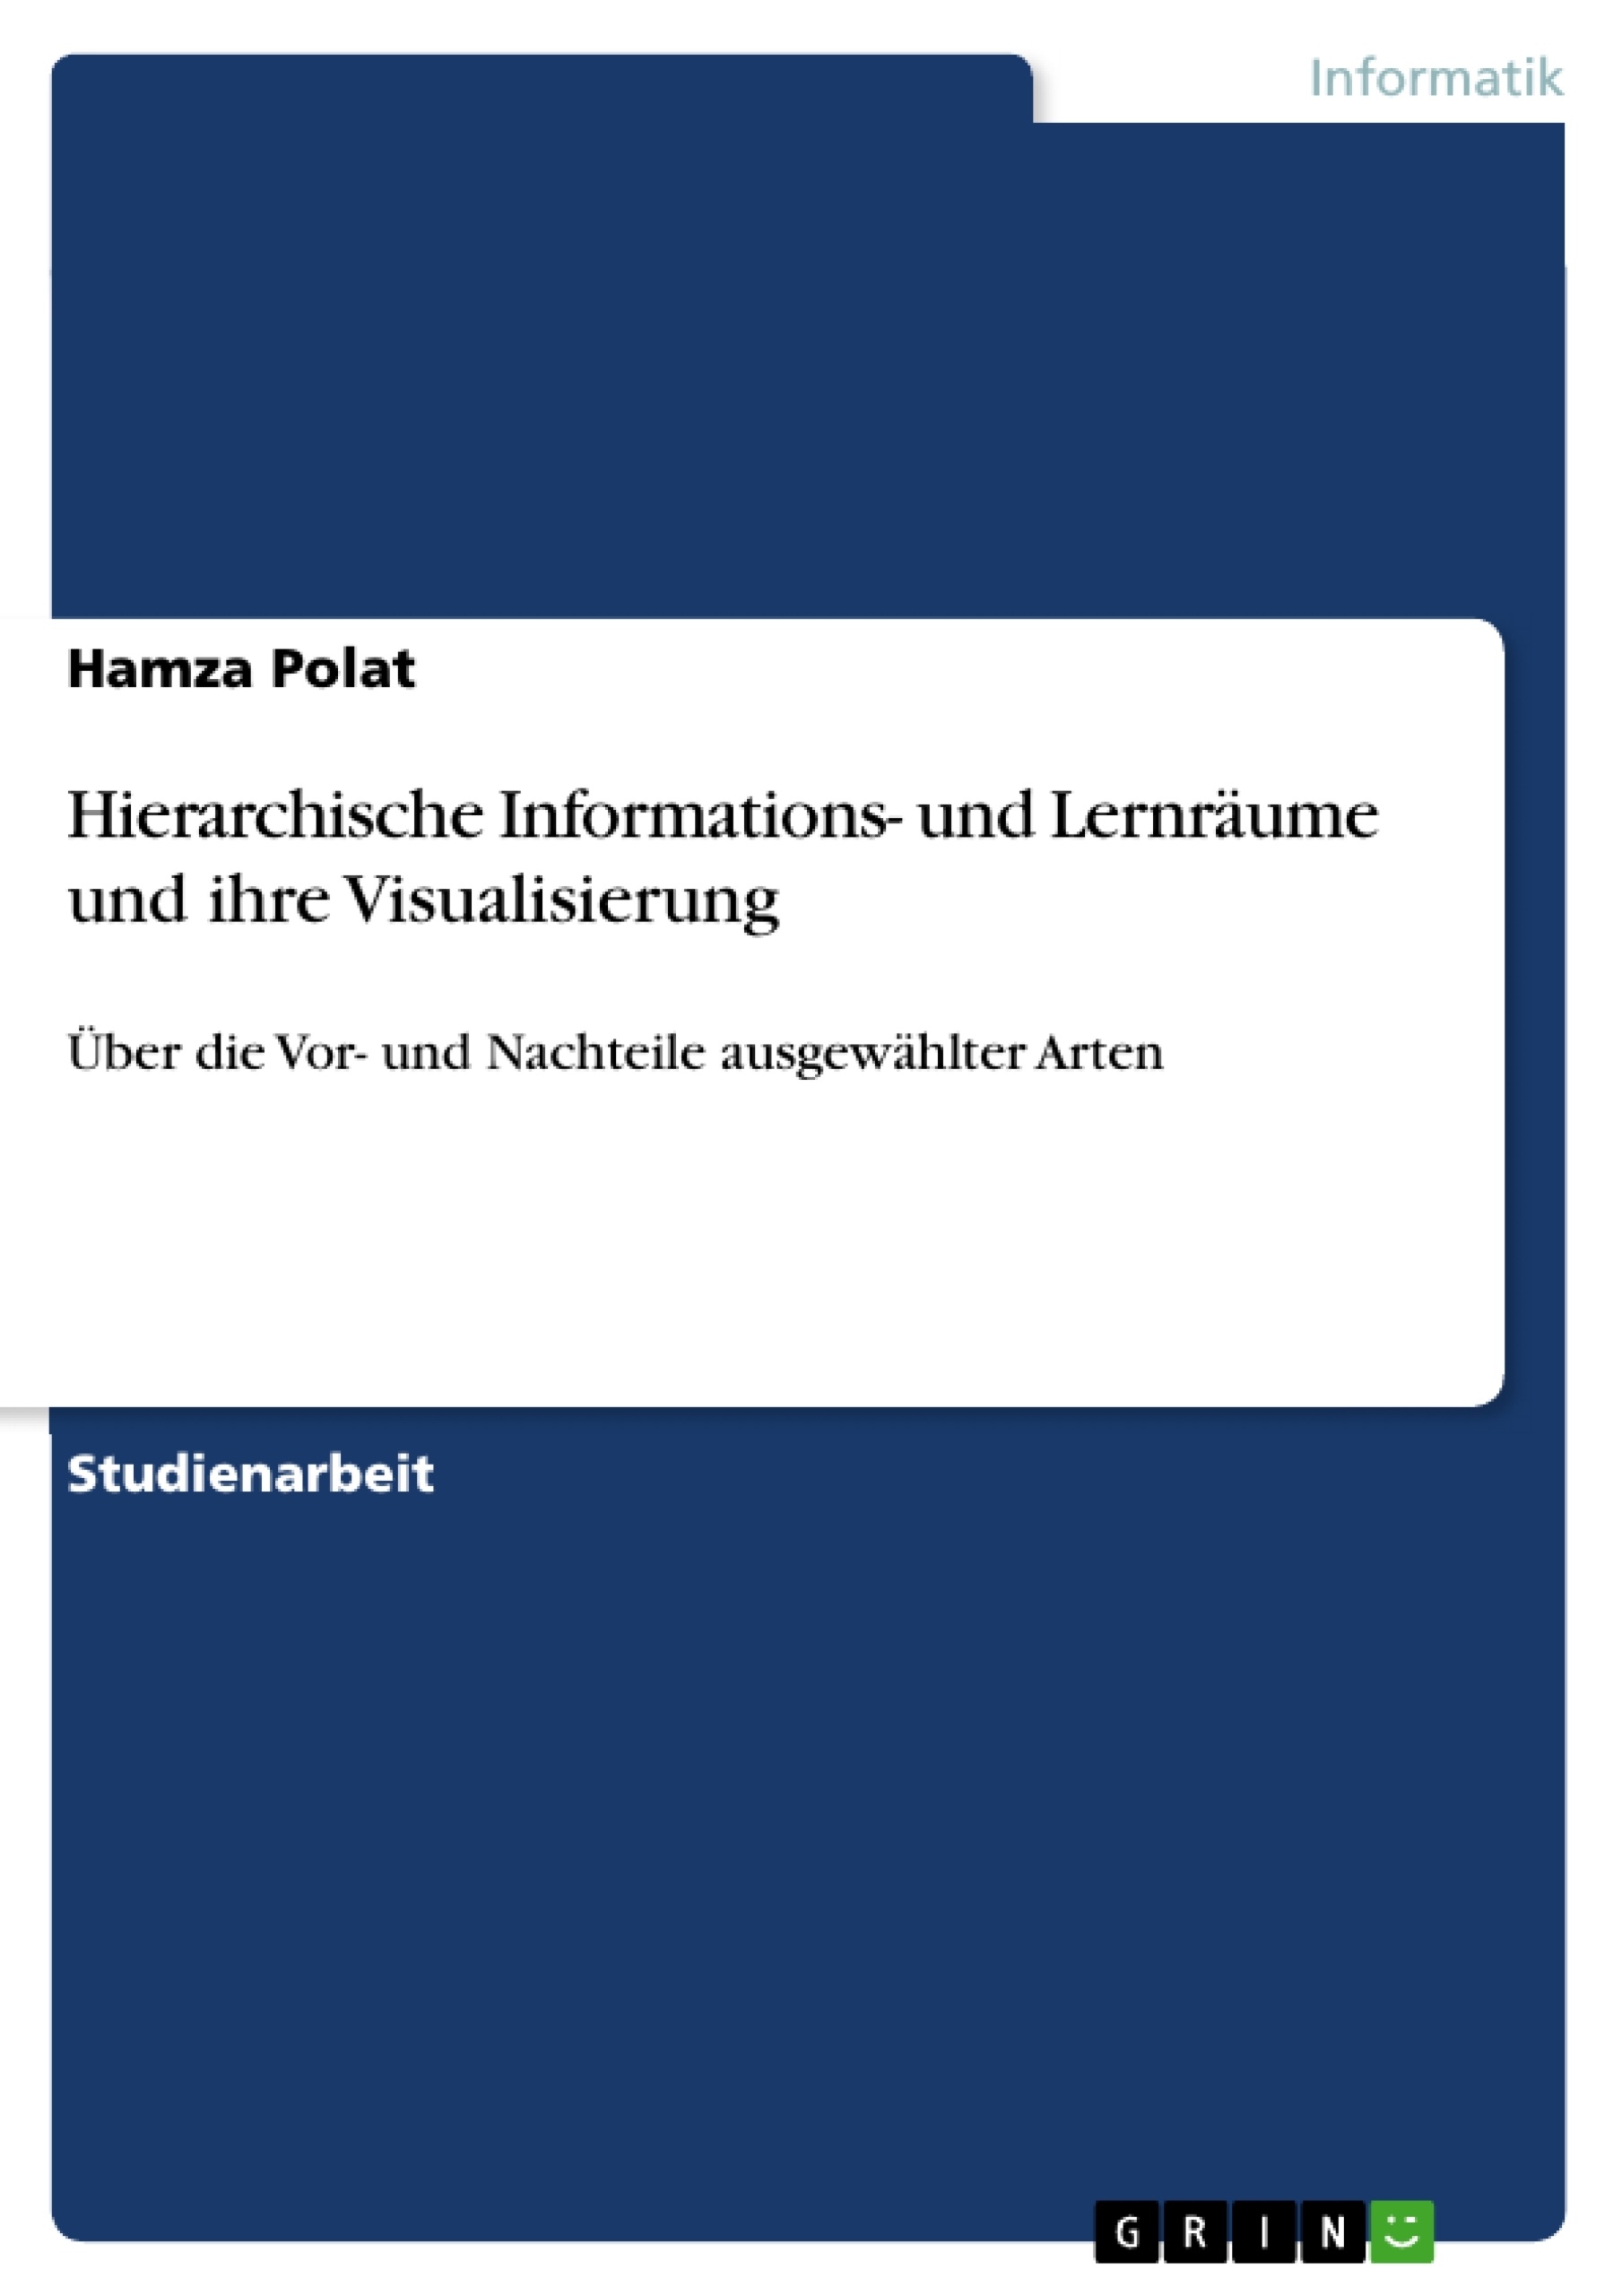 Title: Hierarchische Informations- und Lernräume und ihre Visualisierung